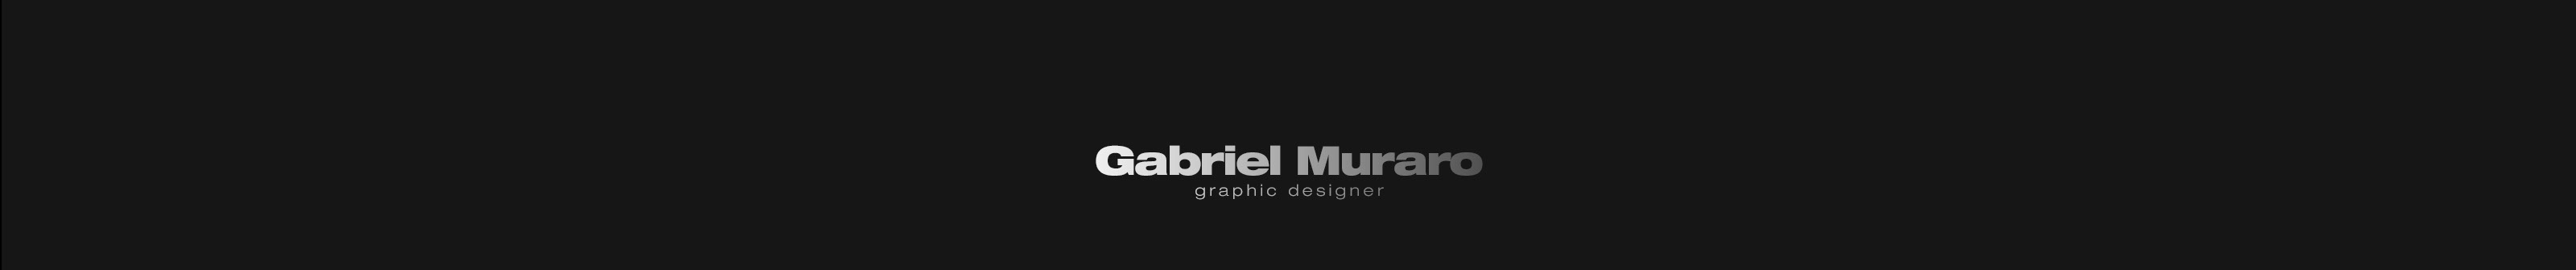 Gabriel Muraro's profile banner